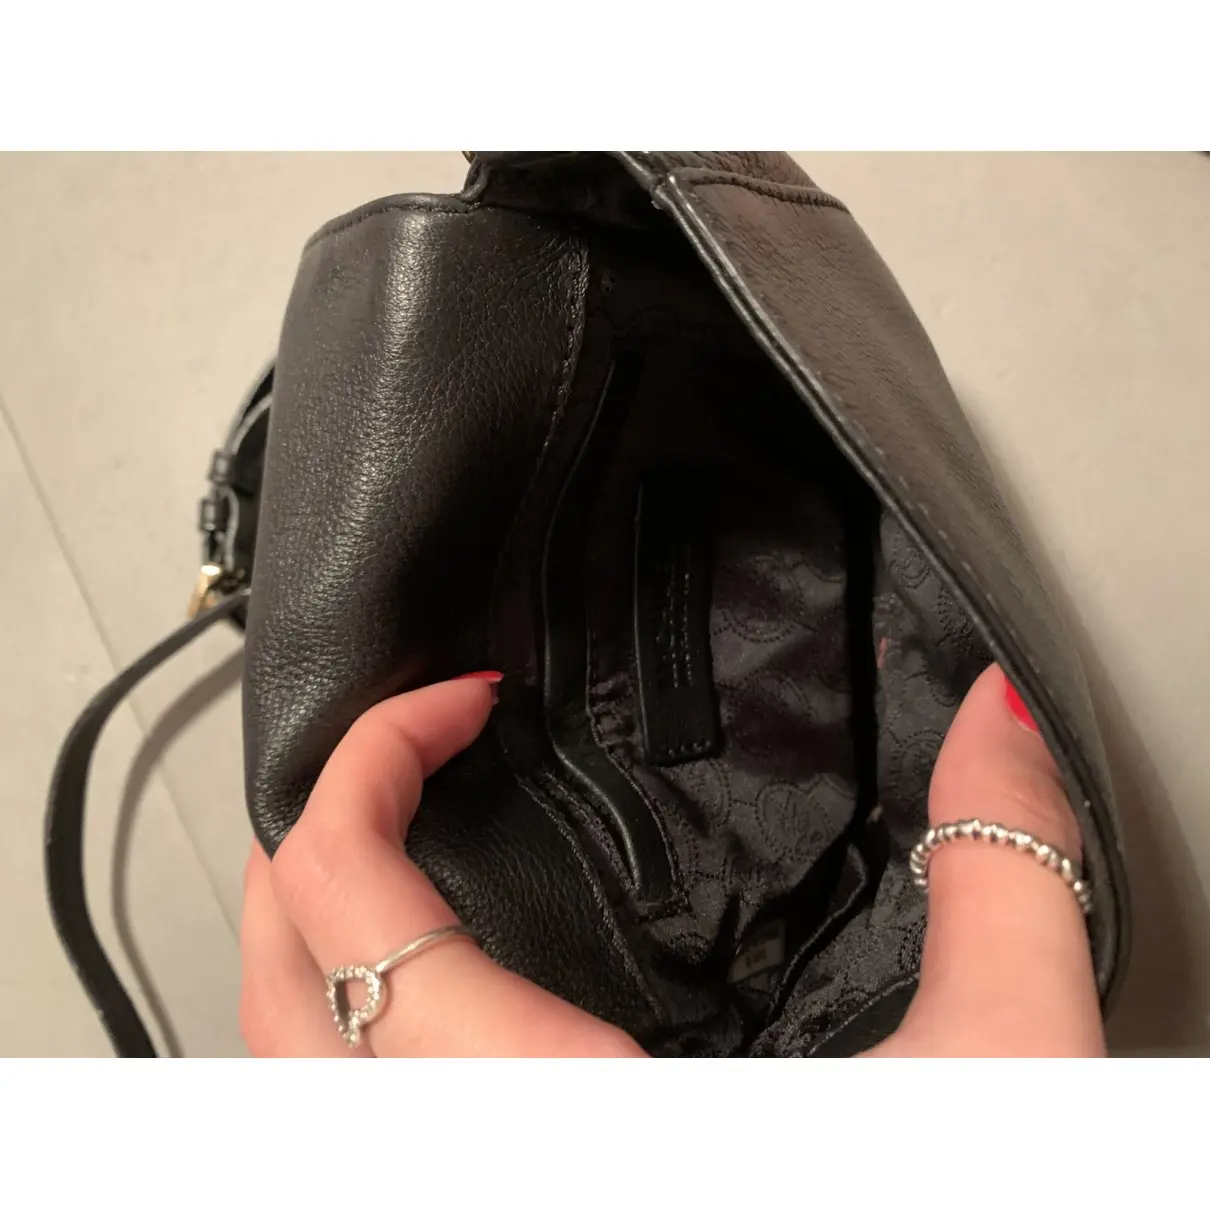 Buy Michael Kors Ava leather crossbody bag online